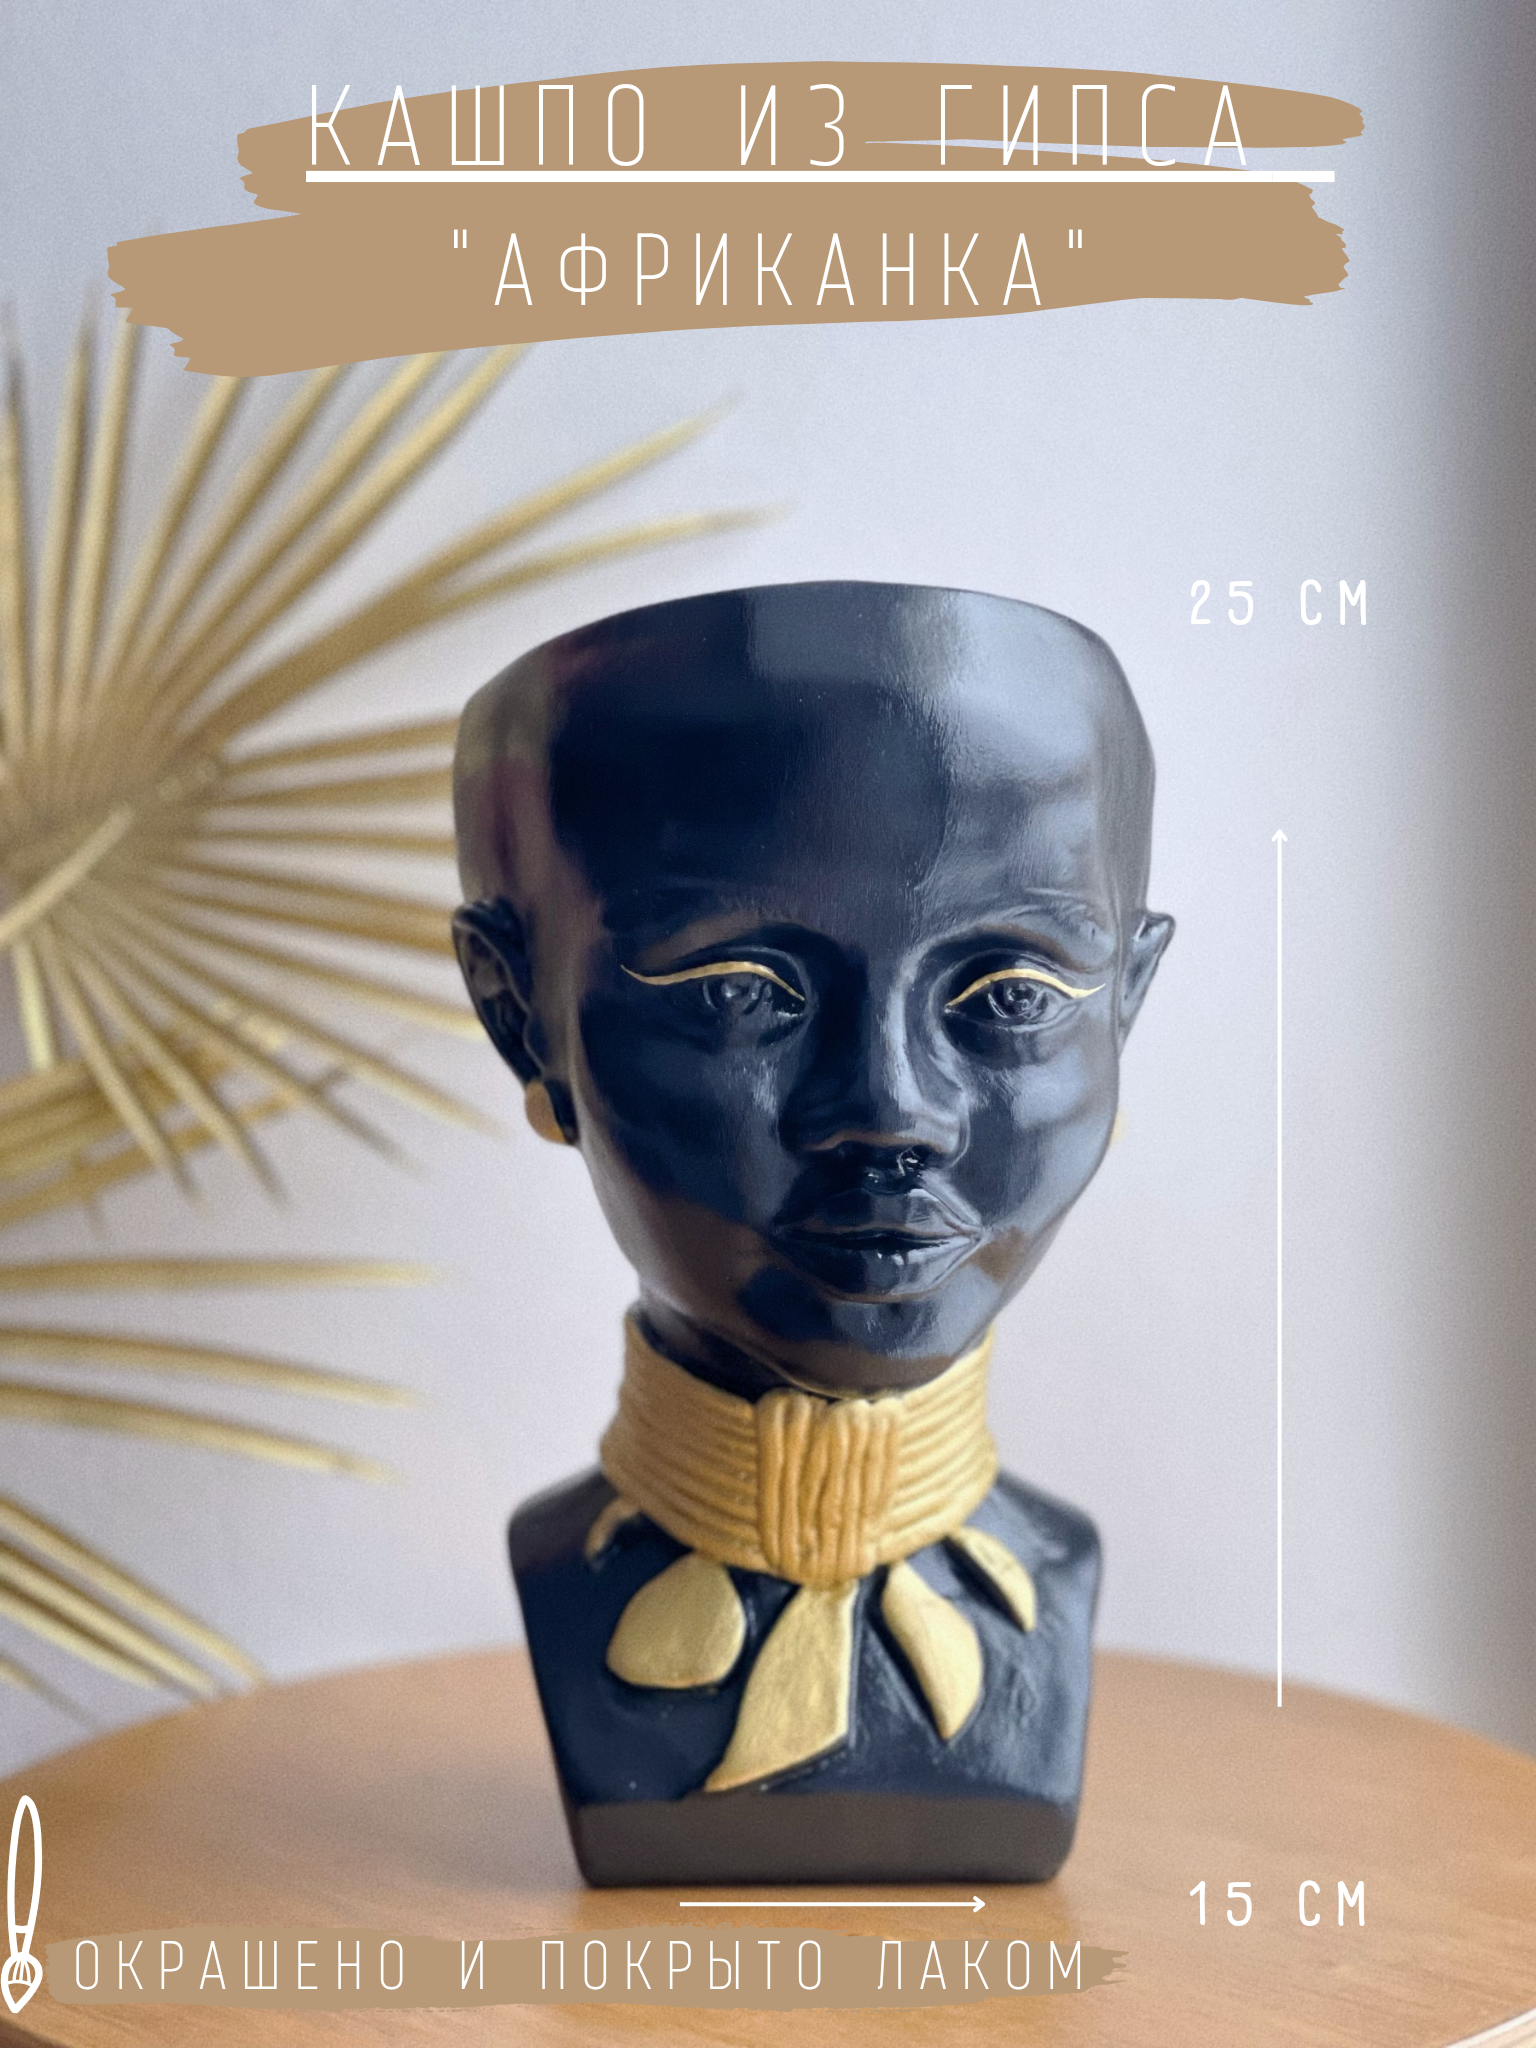 Кашпо из гипса "Африканка", 25 см, черно-золотой / статуэтка / органайзер